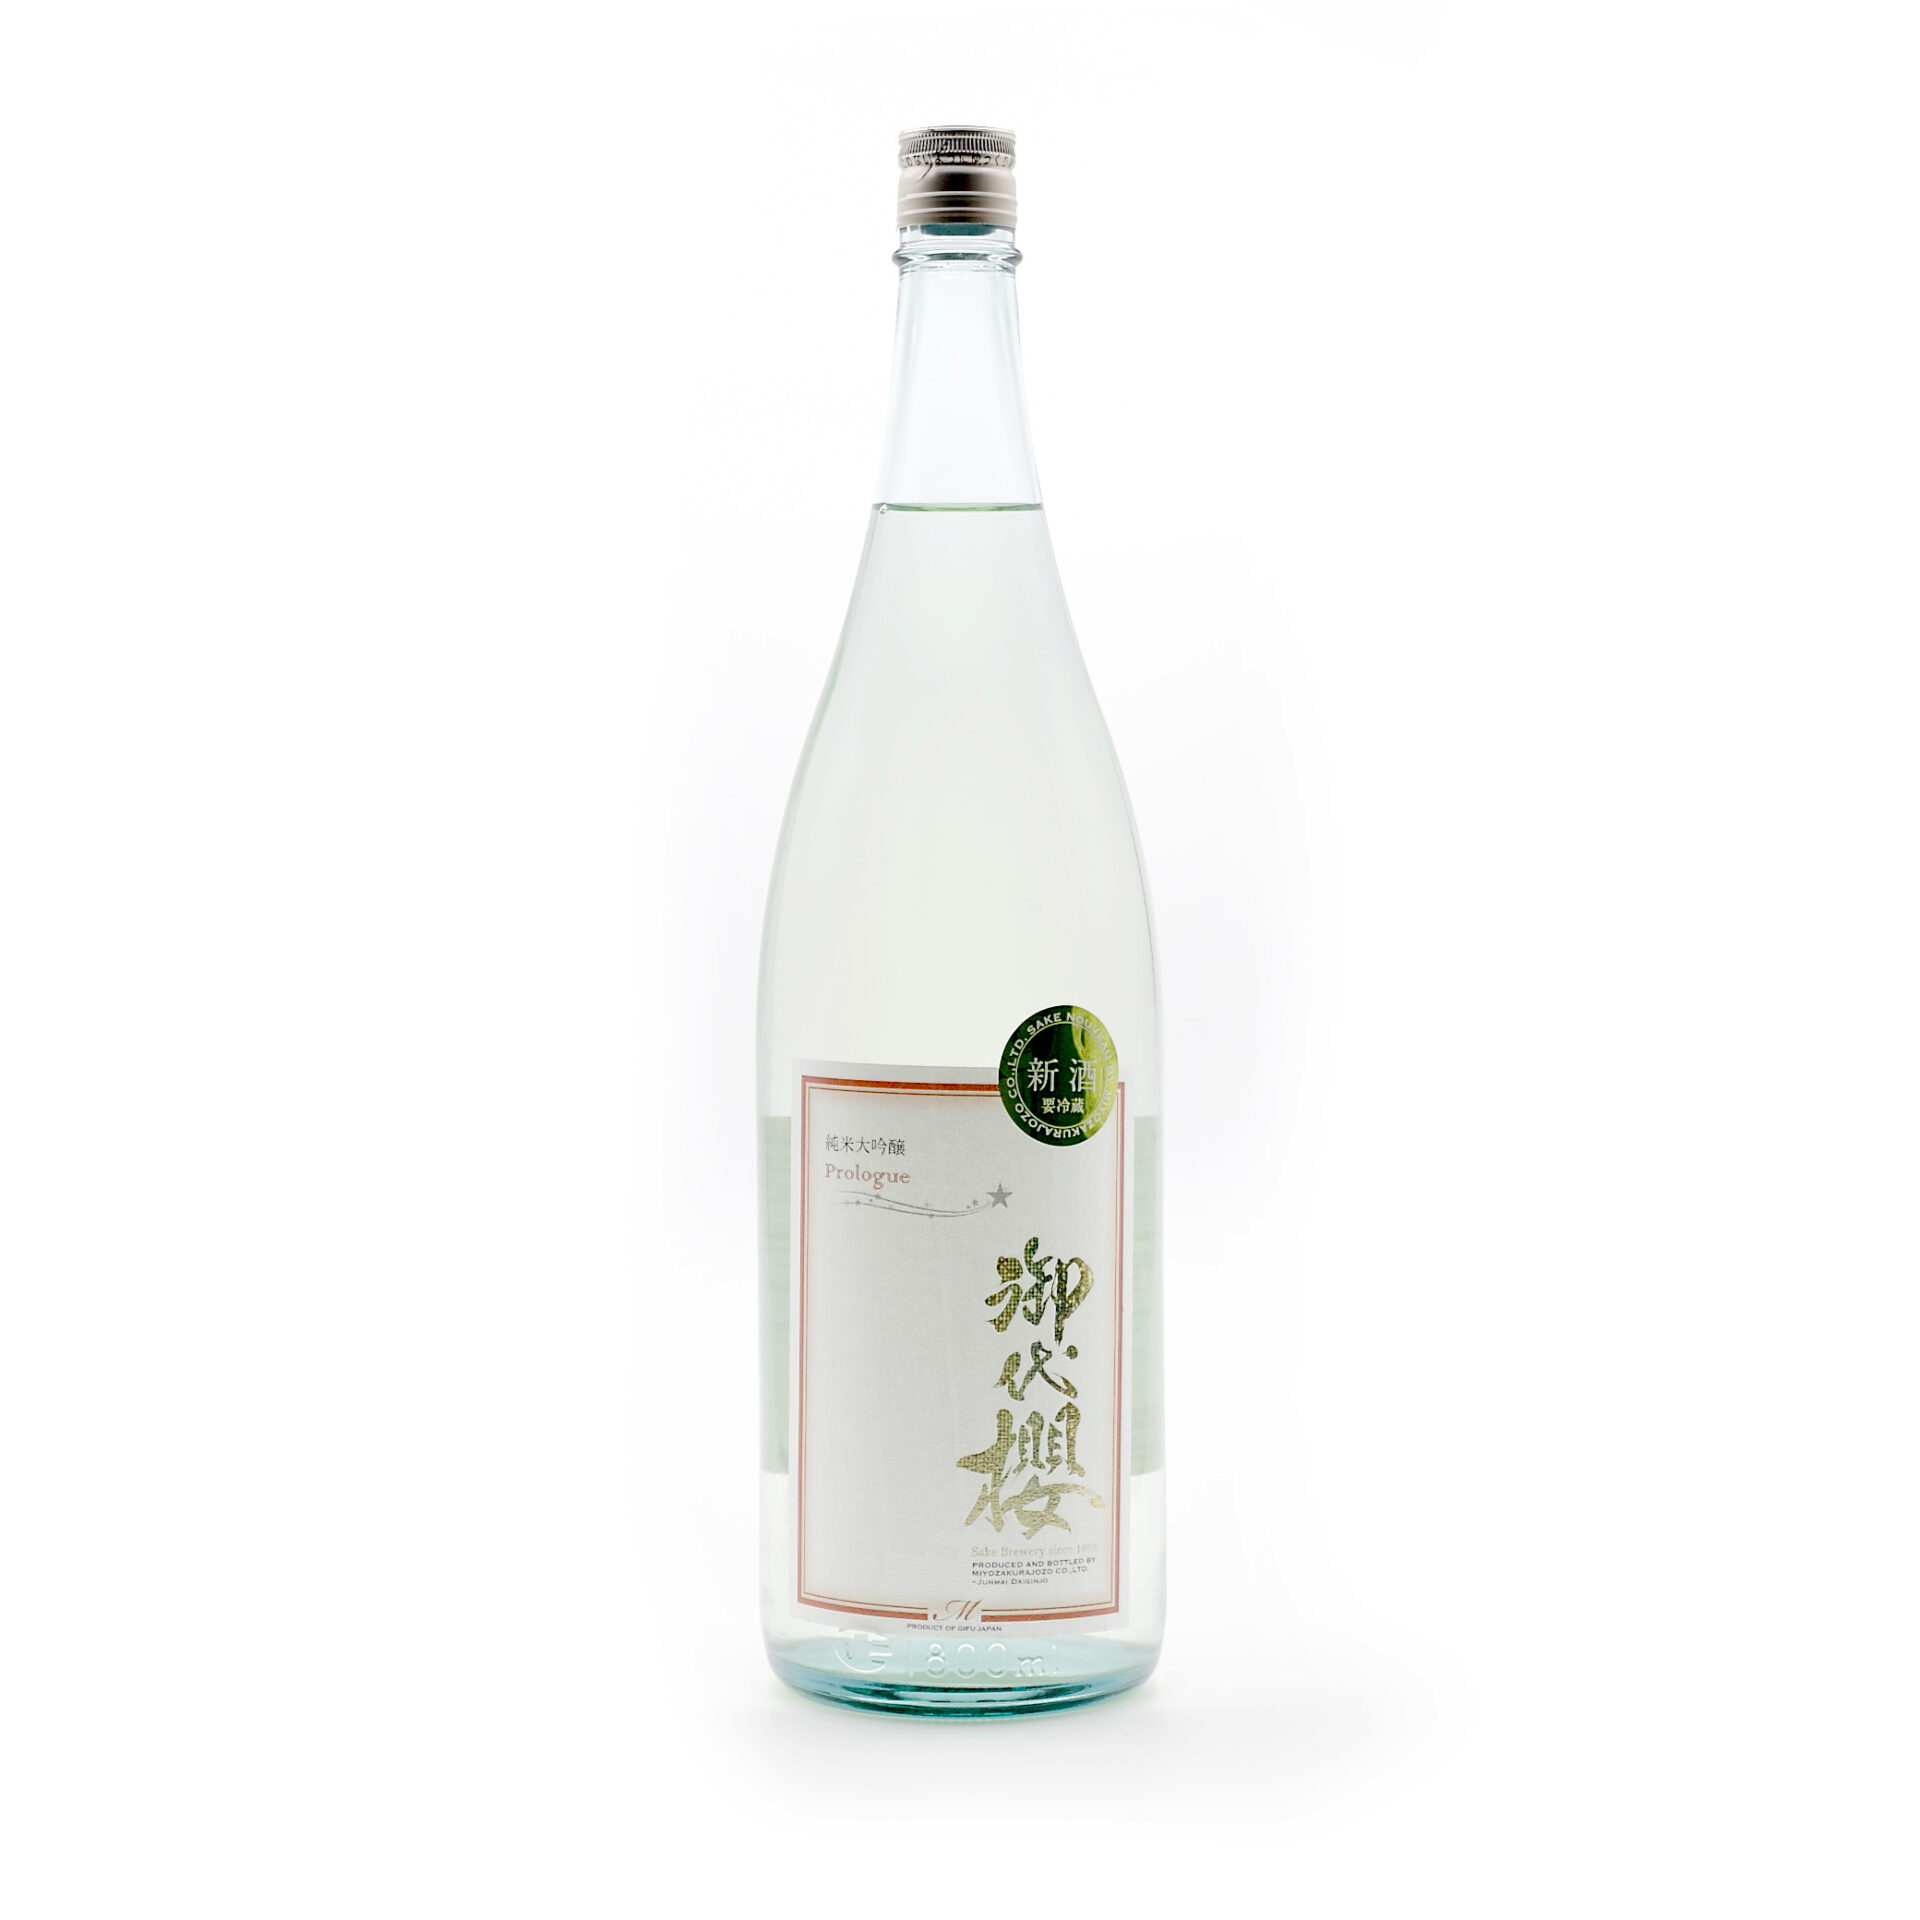 純米大吟醸新酒 Prologue R4BY - 御代桜醸造株式会社